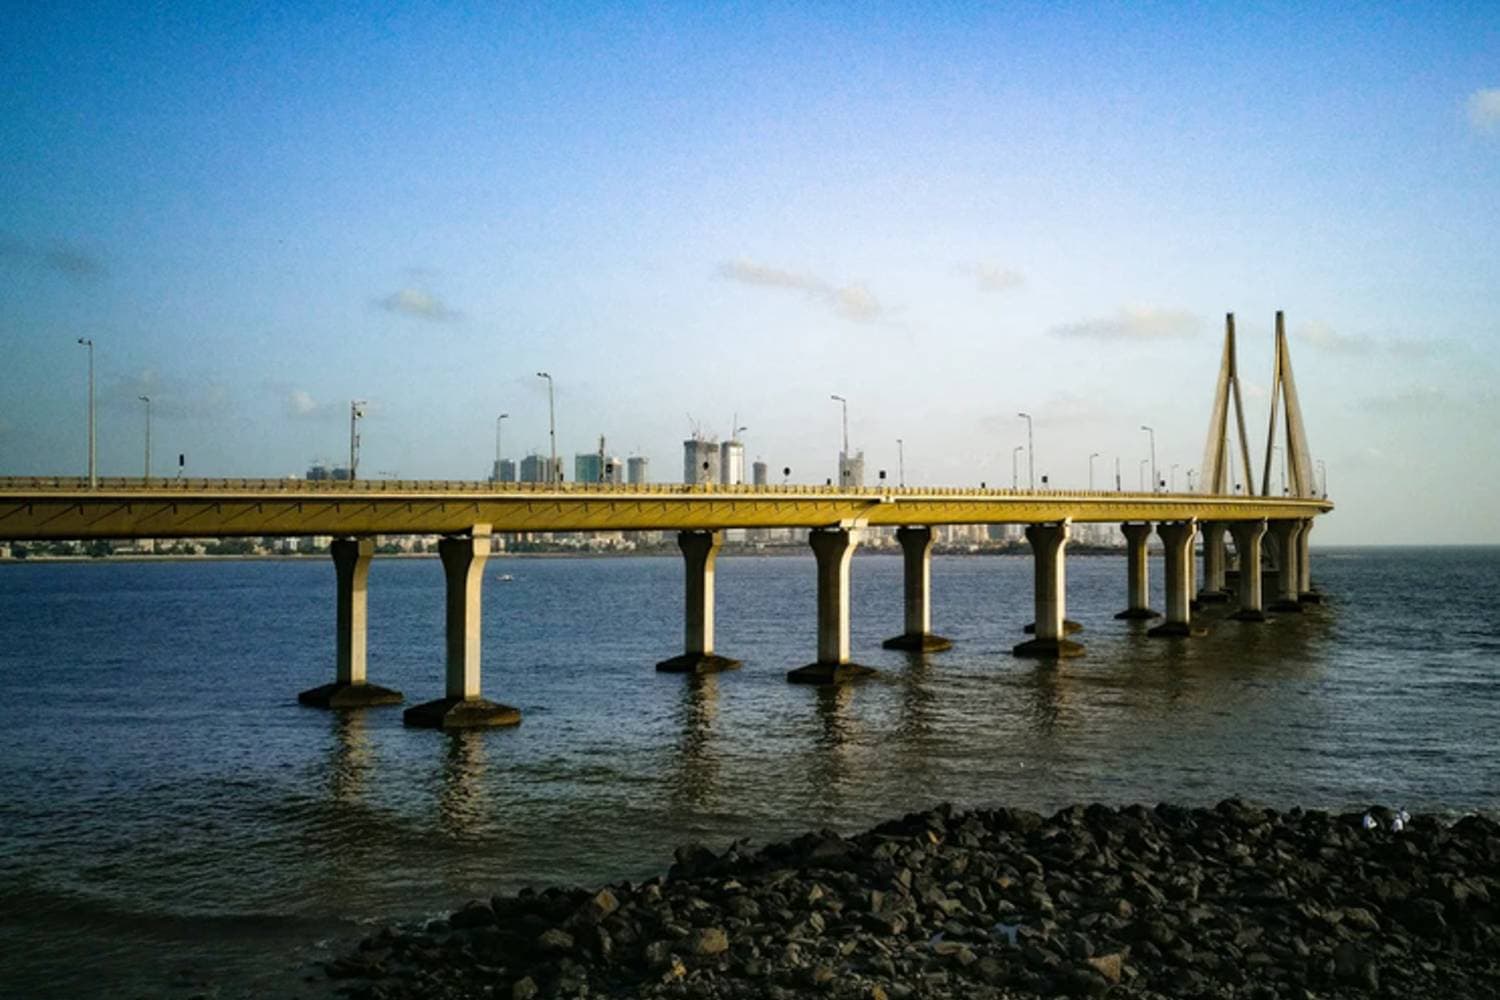 Bandra Worli Sea Link Mumbai's Famous 8 Lane Cable Stayed Bridge